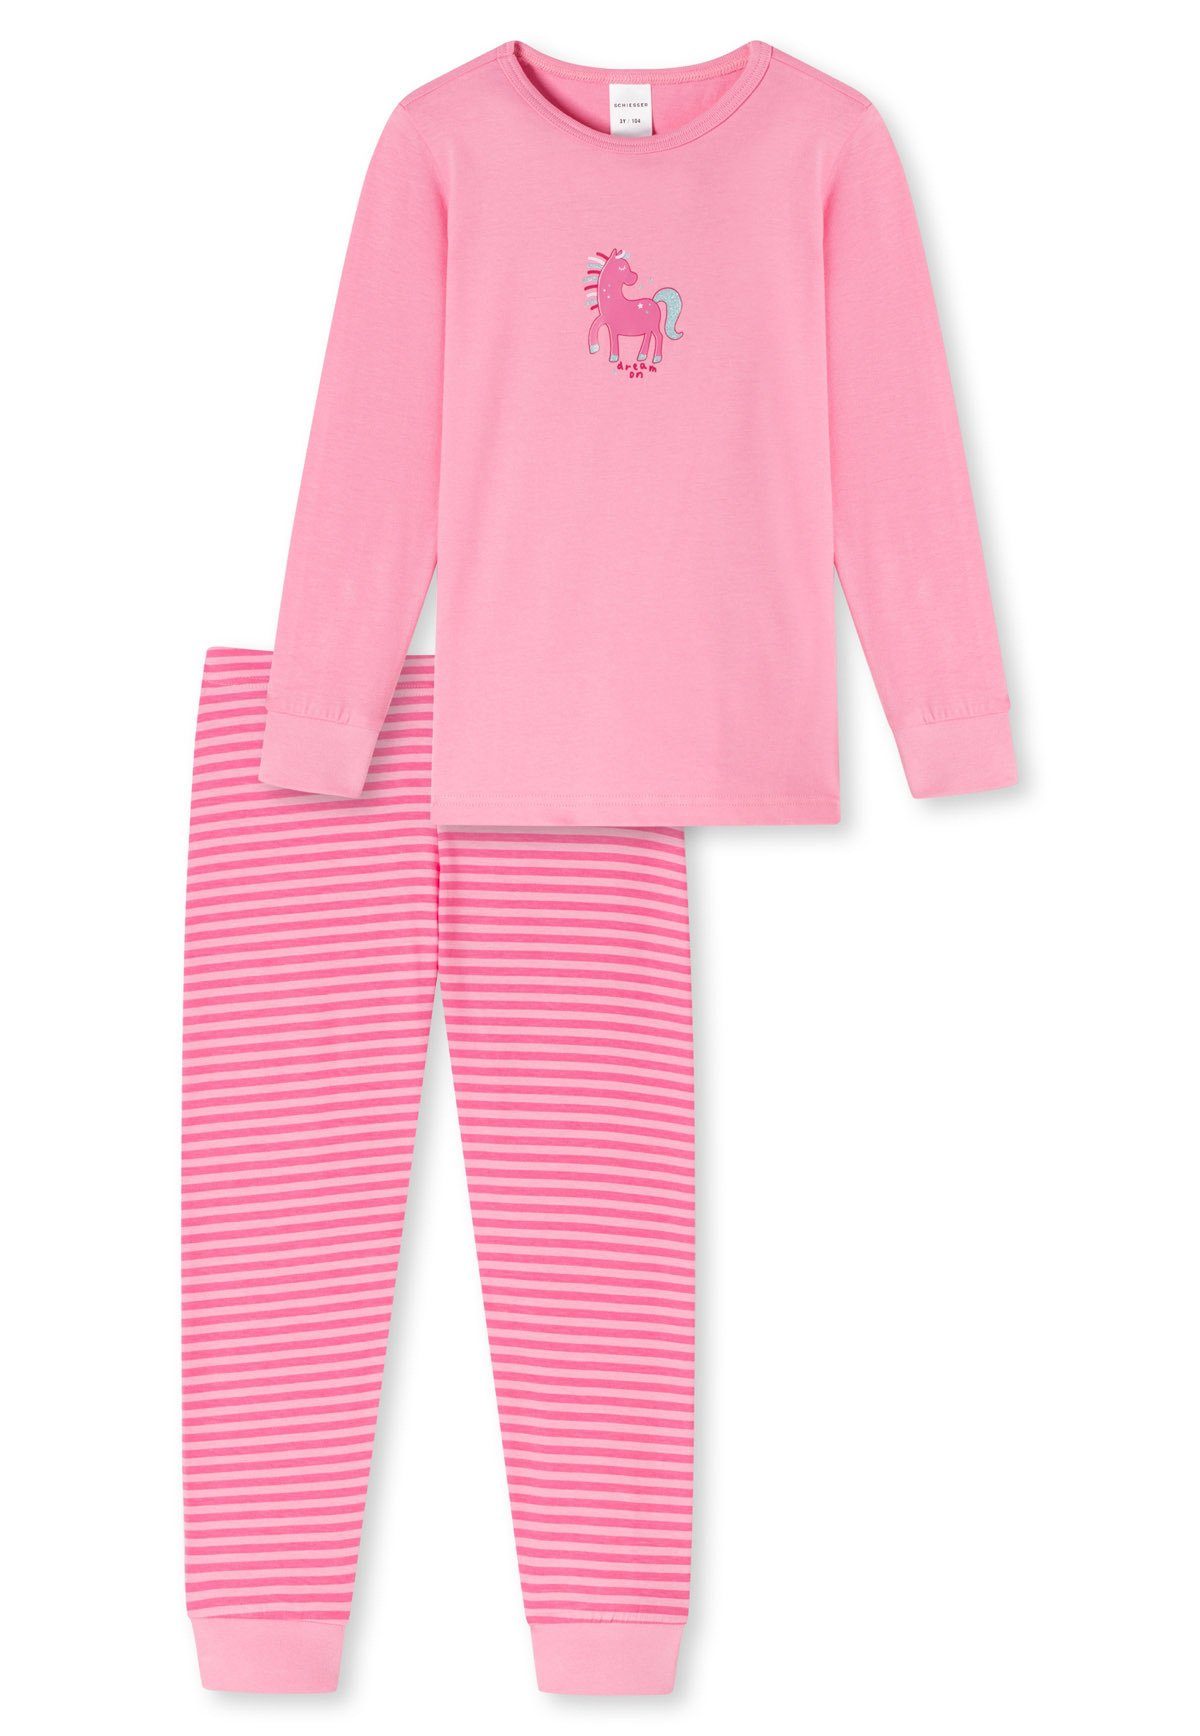 Schiesser Pyjama Mädchen Schlafanzug - langarm, Kinder, Baumwolle rosa